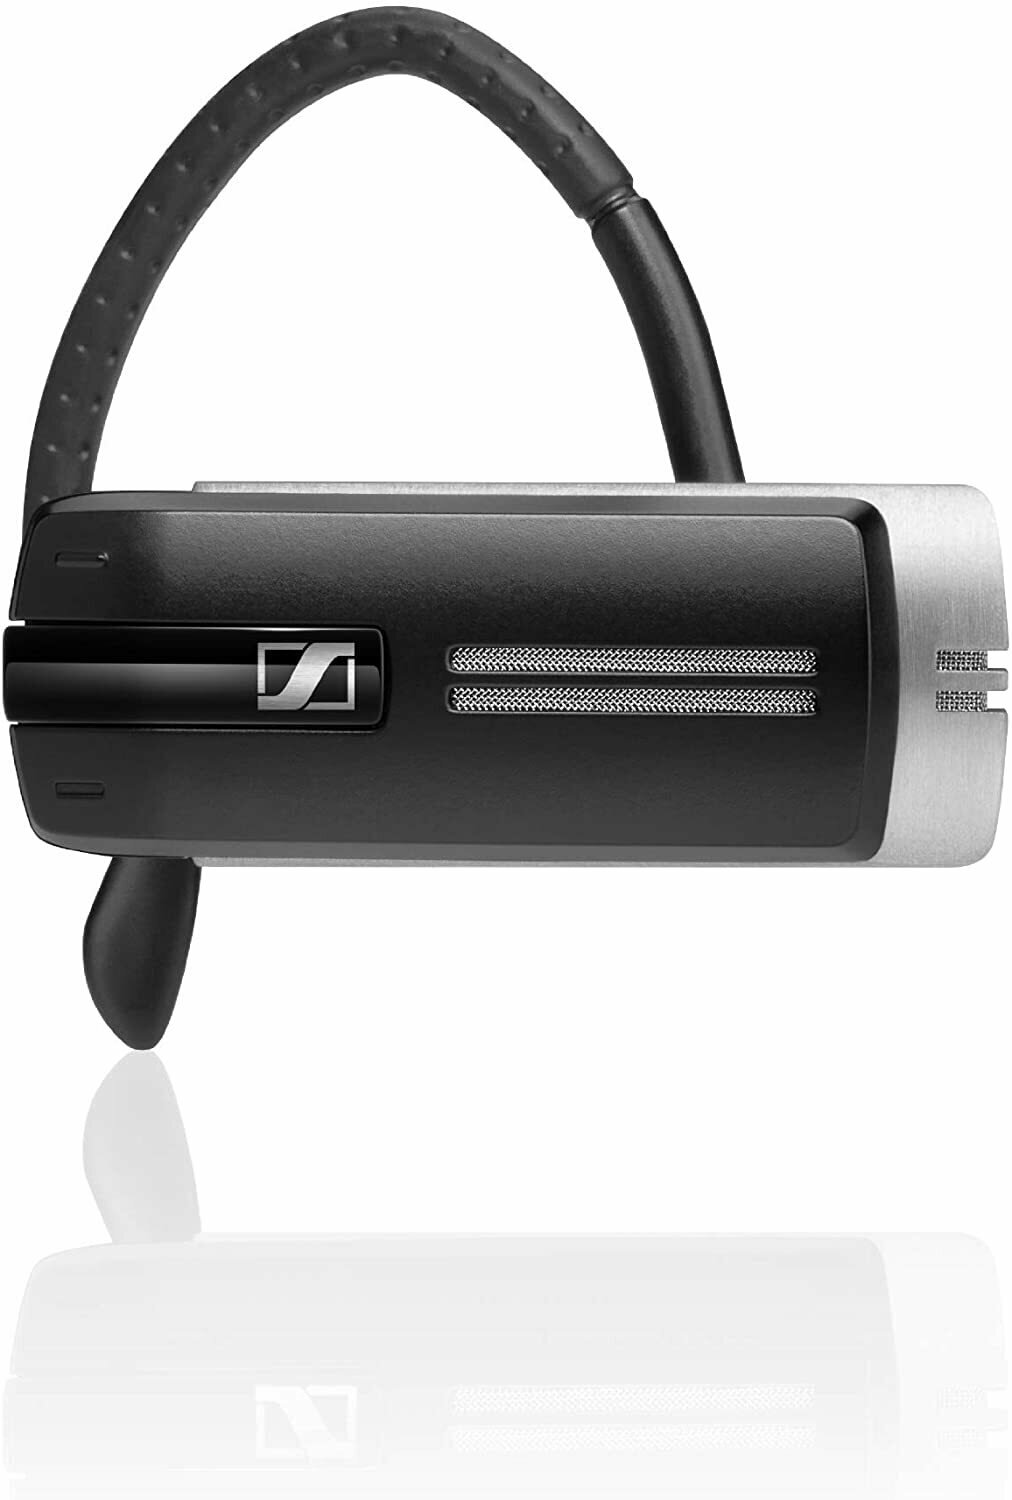 Sennheiser PRESENCE Grey UC Wireless In-Ear Headset
#SEPGUCOIE MFR #508342